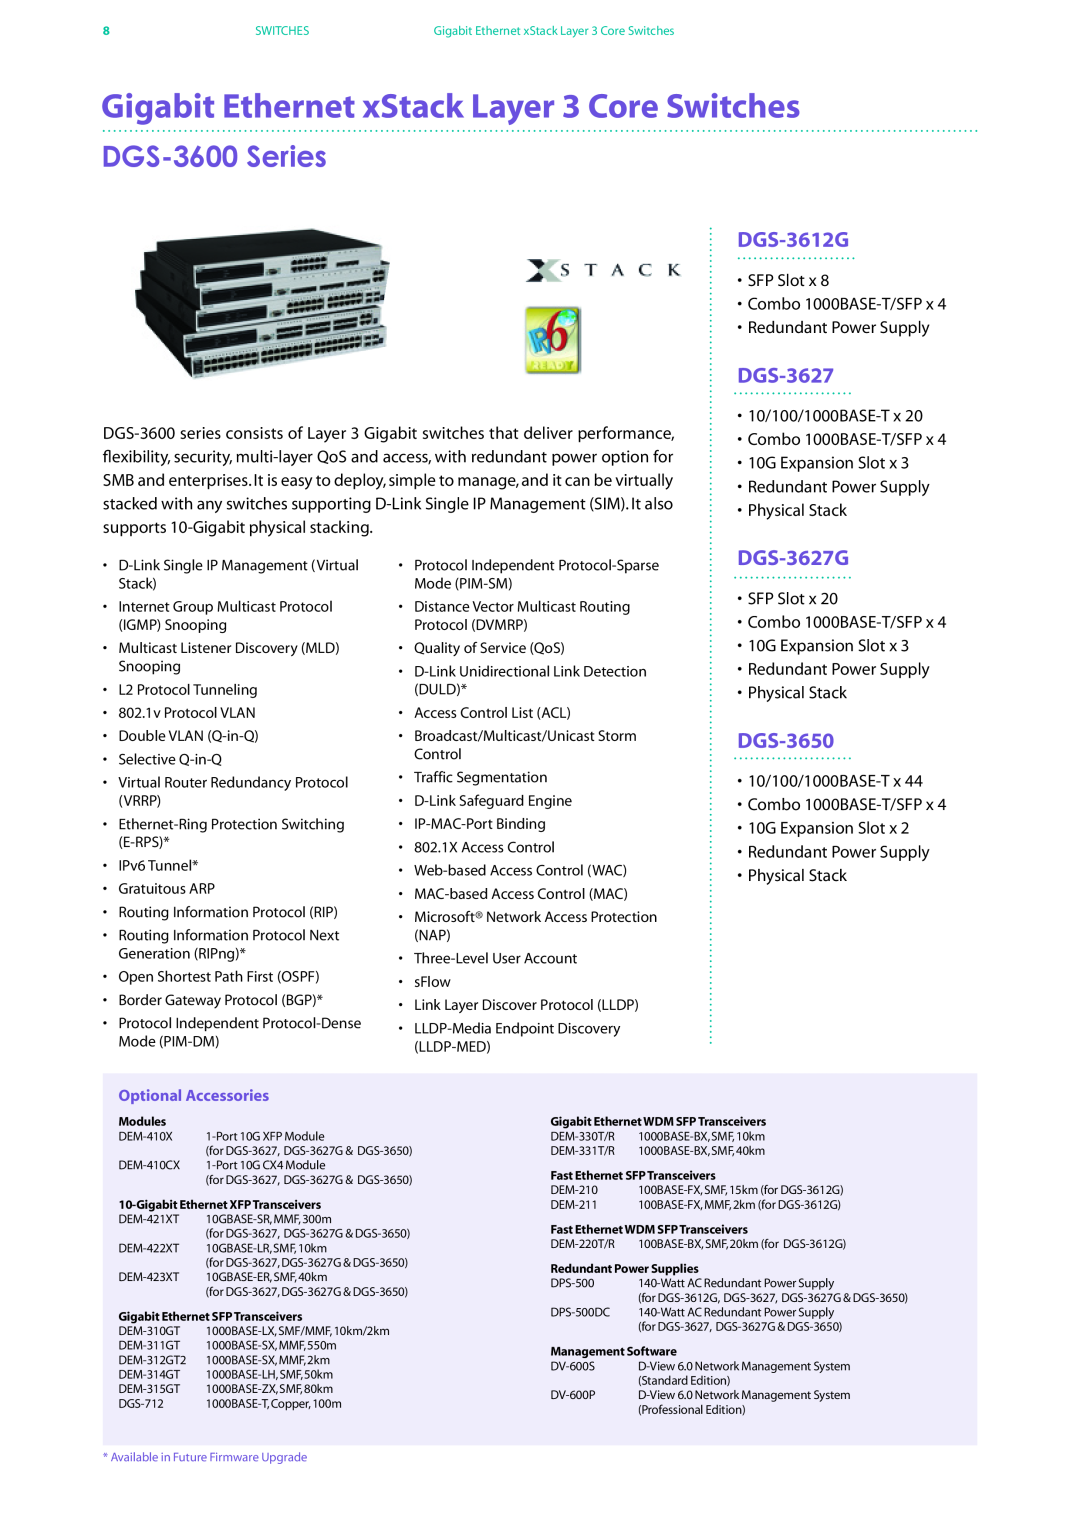 D-Link DES-7200 manual Gigabit Ethernet xStack Layer 3 Core Switches, DGS-3600 Series, DGS-3612G, DGS-3627G, DGS-3650 